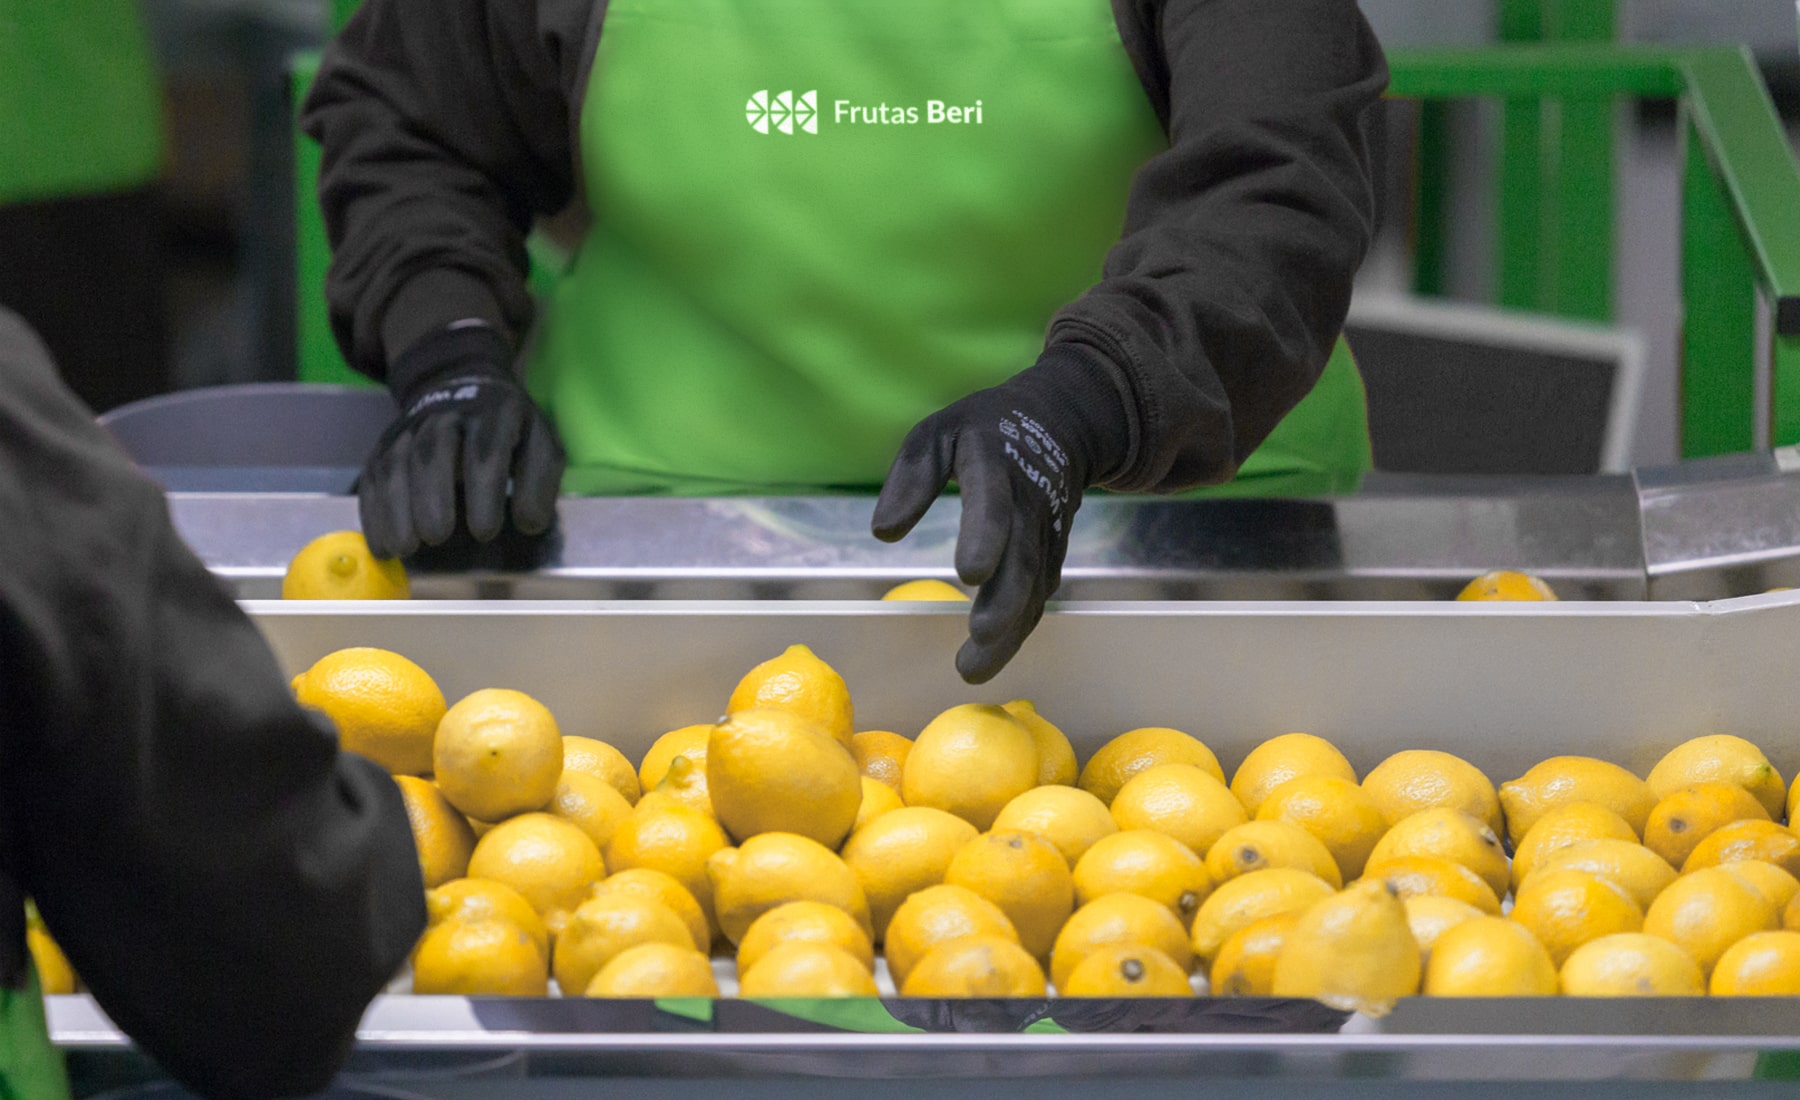 Aplicación del logotipo de Frutas Beri en indumentaria profesional mientras recogen limones